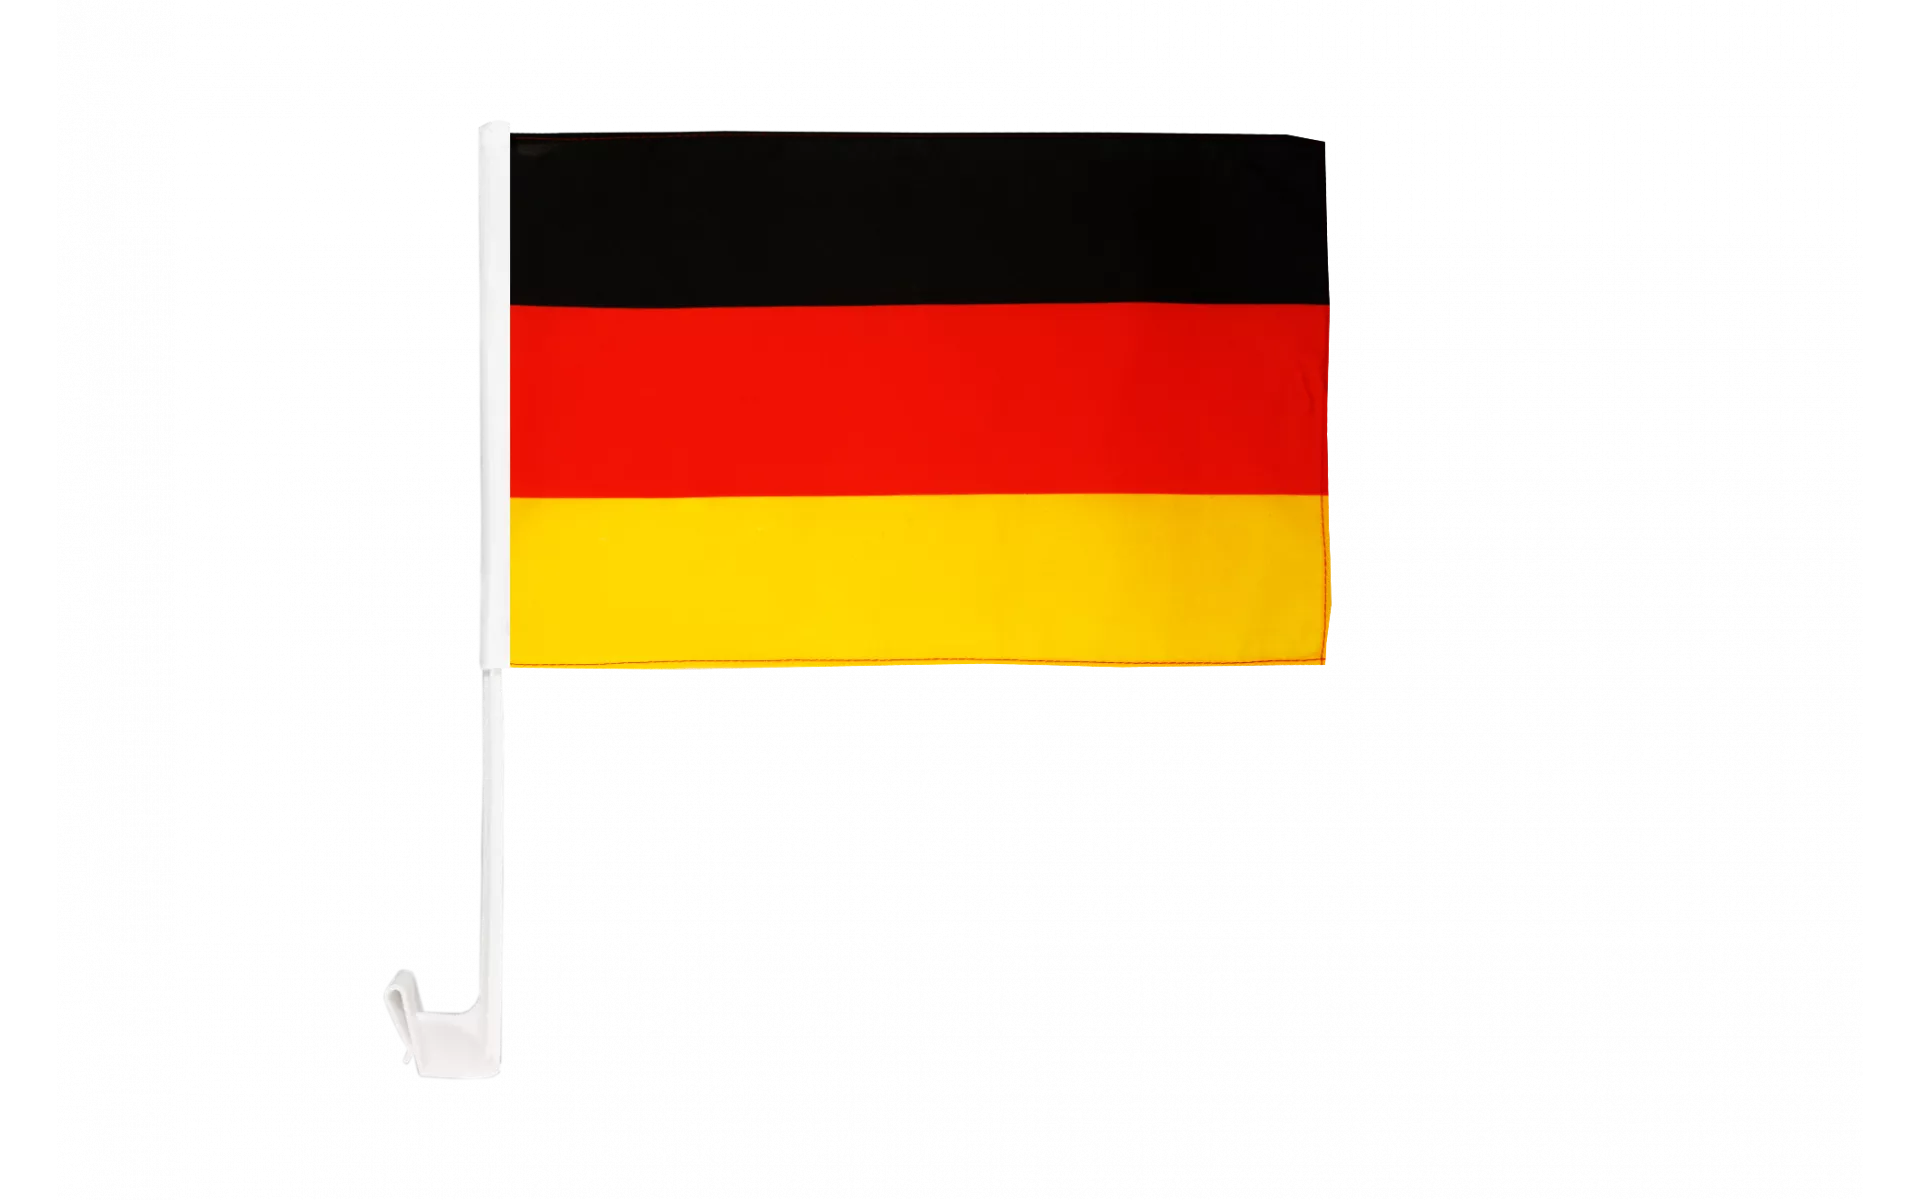 Deutschland Bayern mit Wappen Autofahne Autoflagge Fahnen Auto Flaggen  30x40cm